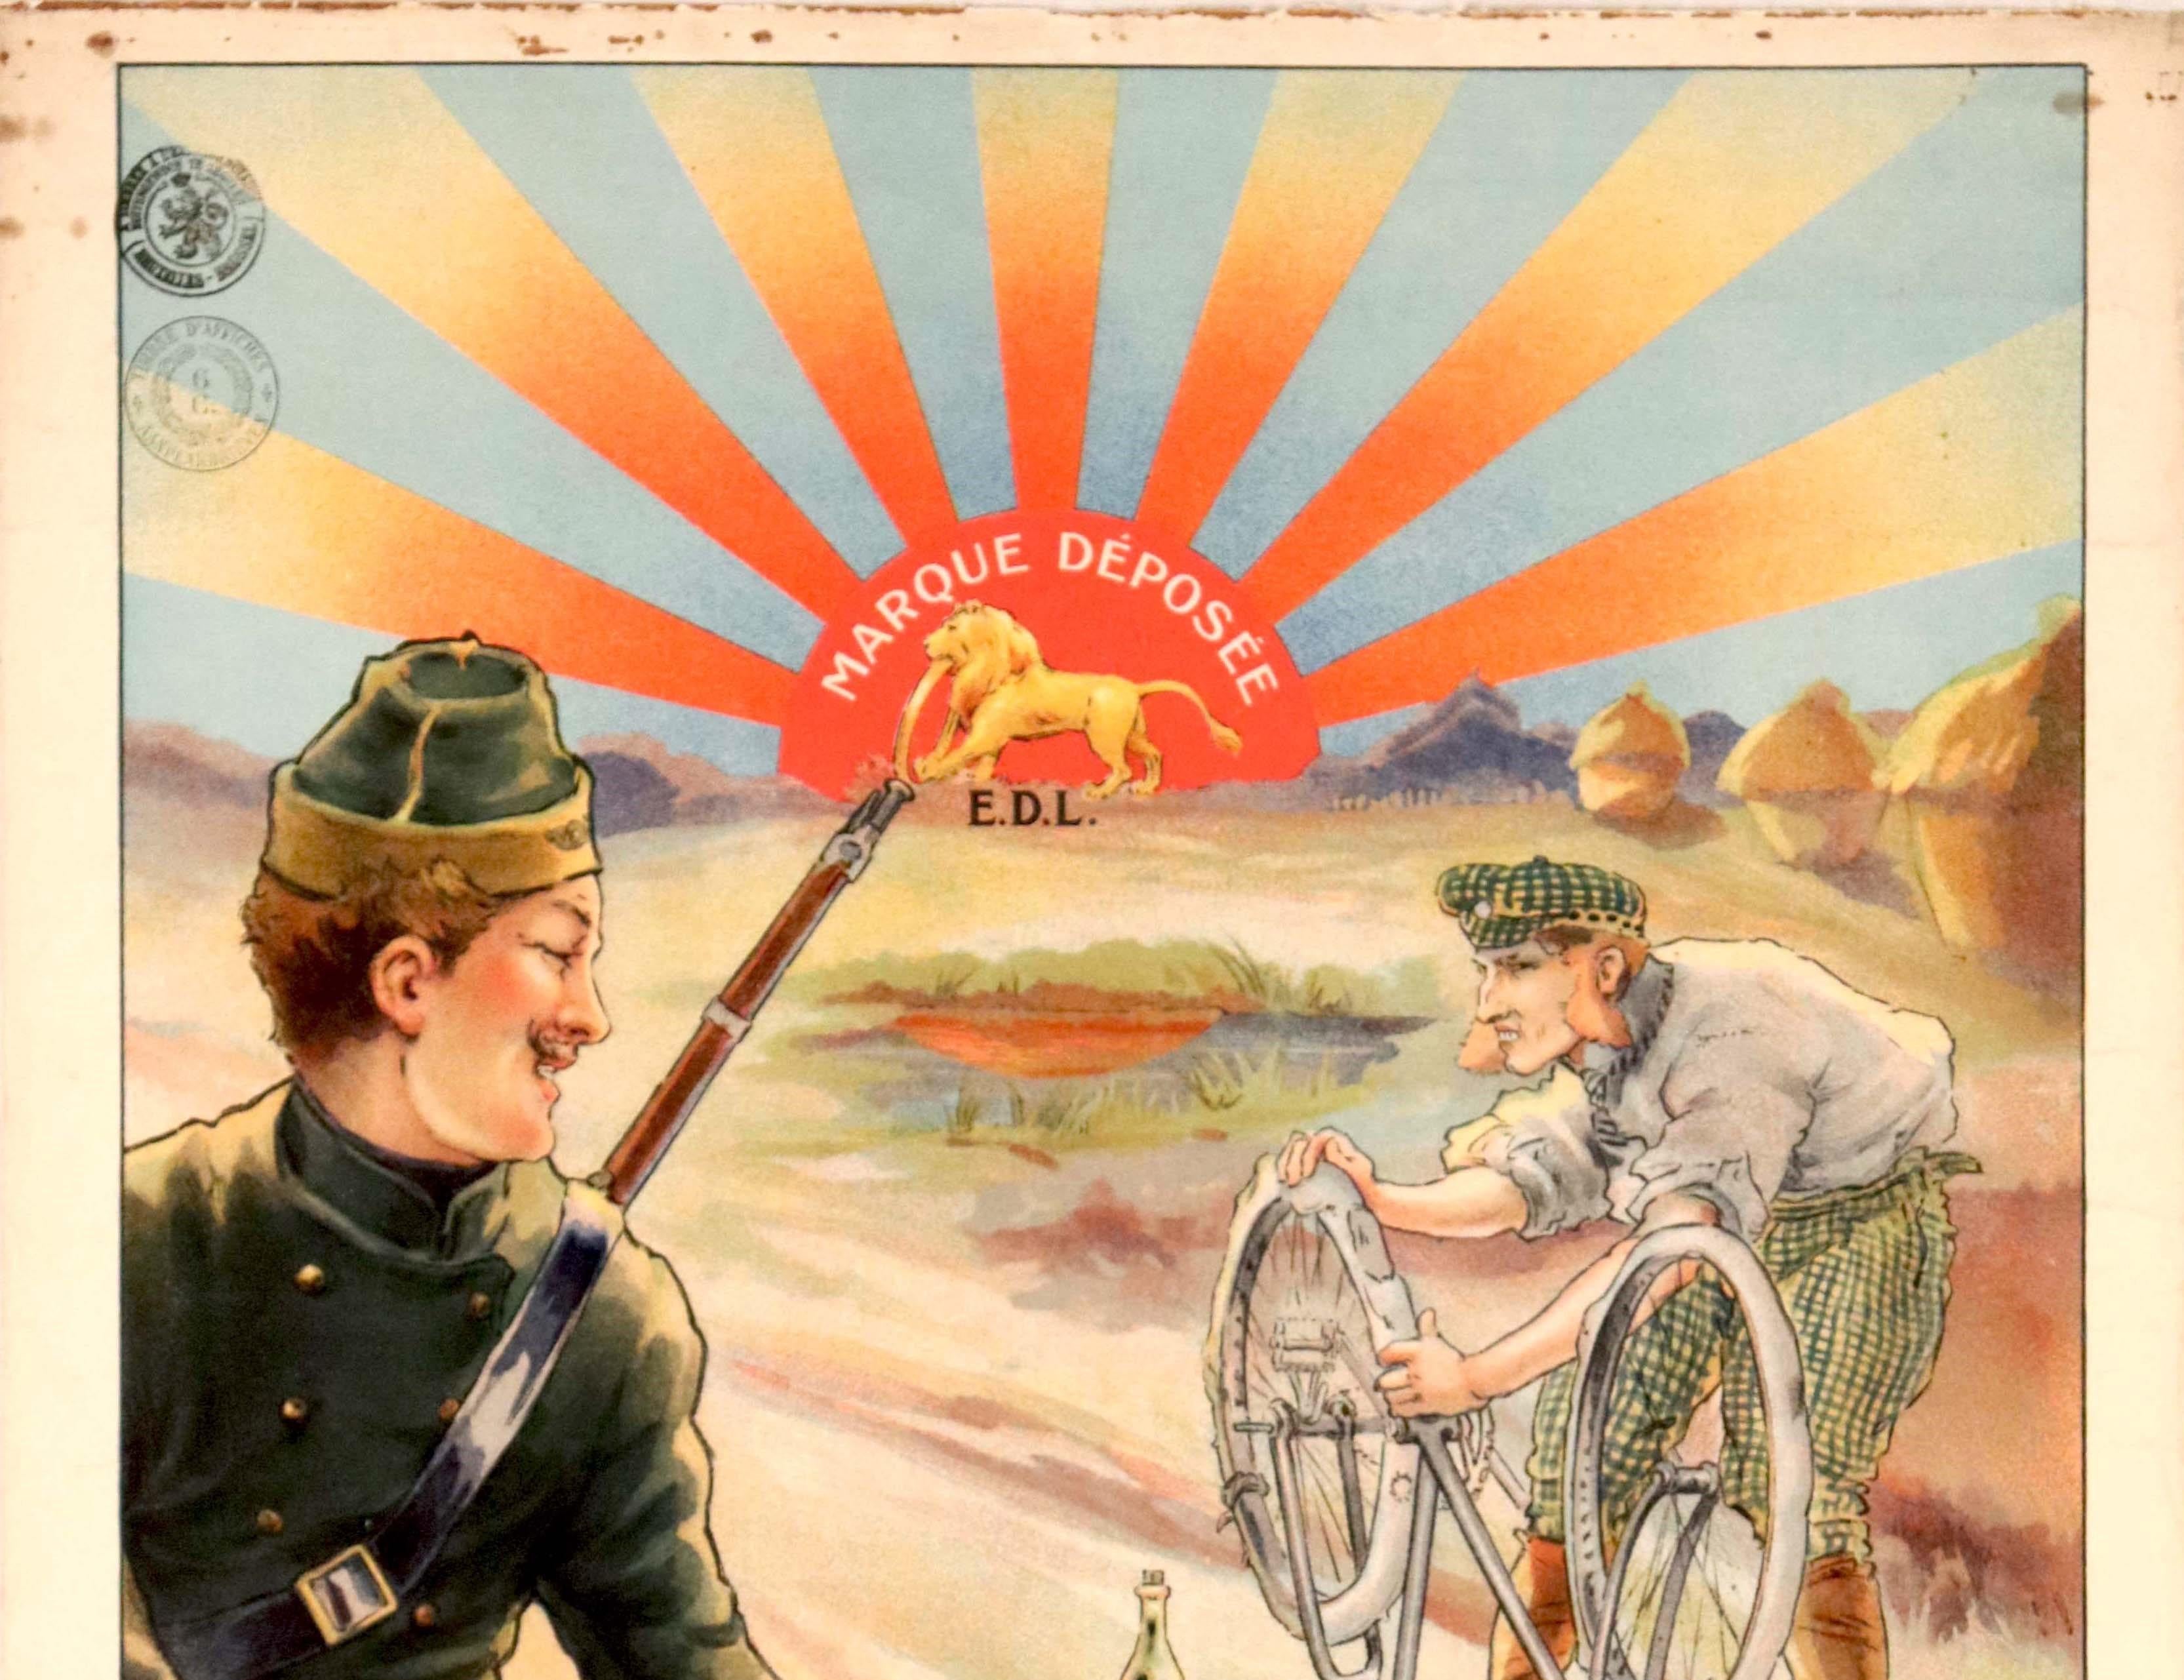 Affiche publicitaire ancienne originale pour les pneus Le Lion présentant une illustration d'un soldat carabinier belge souriant, fusil à l'épaule, passant à bicyclette devant un homme réparant un pneu crevé sur son vélo au bord d'un chemin de